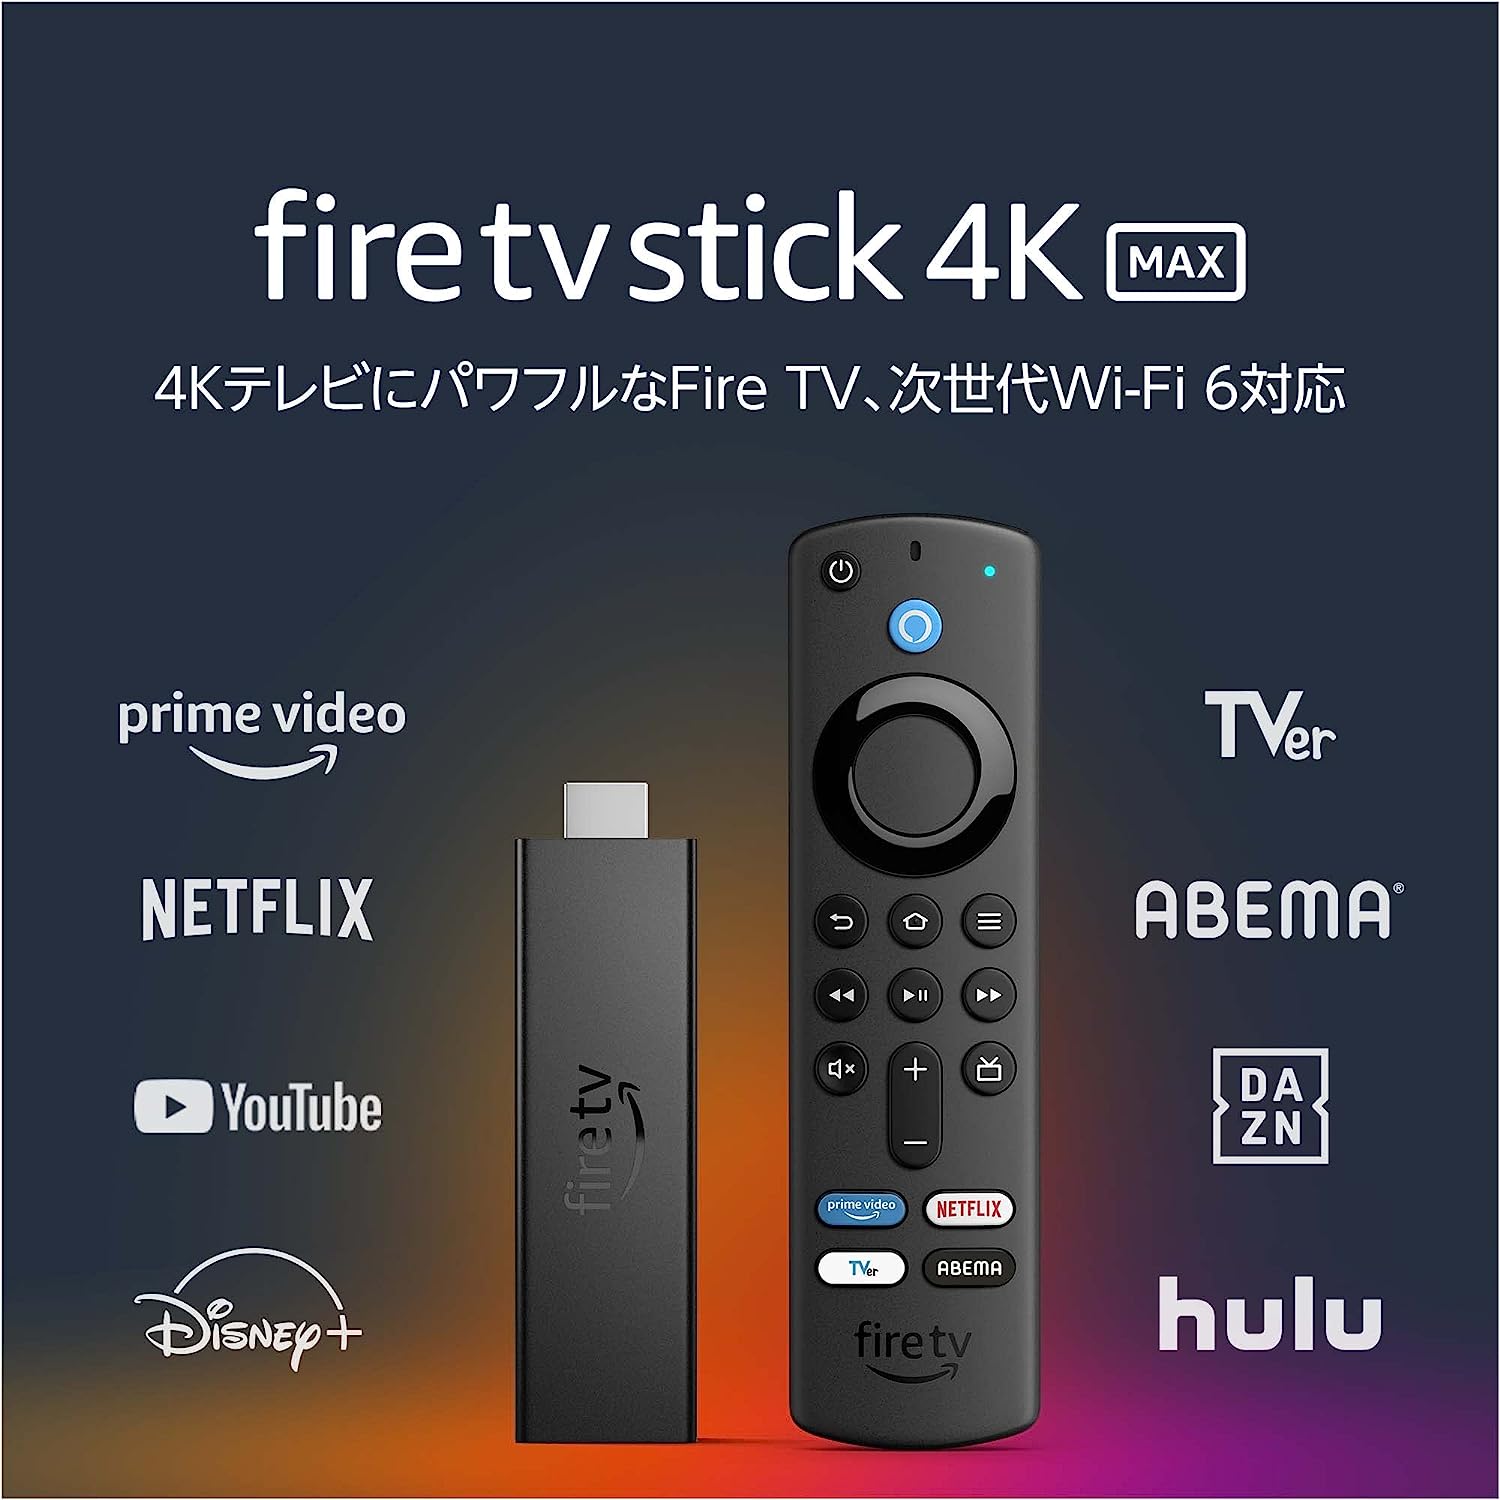 【在庫処分で50%OFF】Fire TV Stick 4K Max(第1世代)が半額です